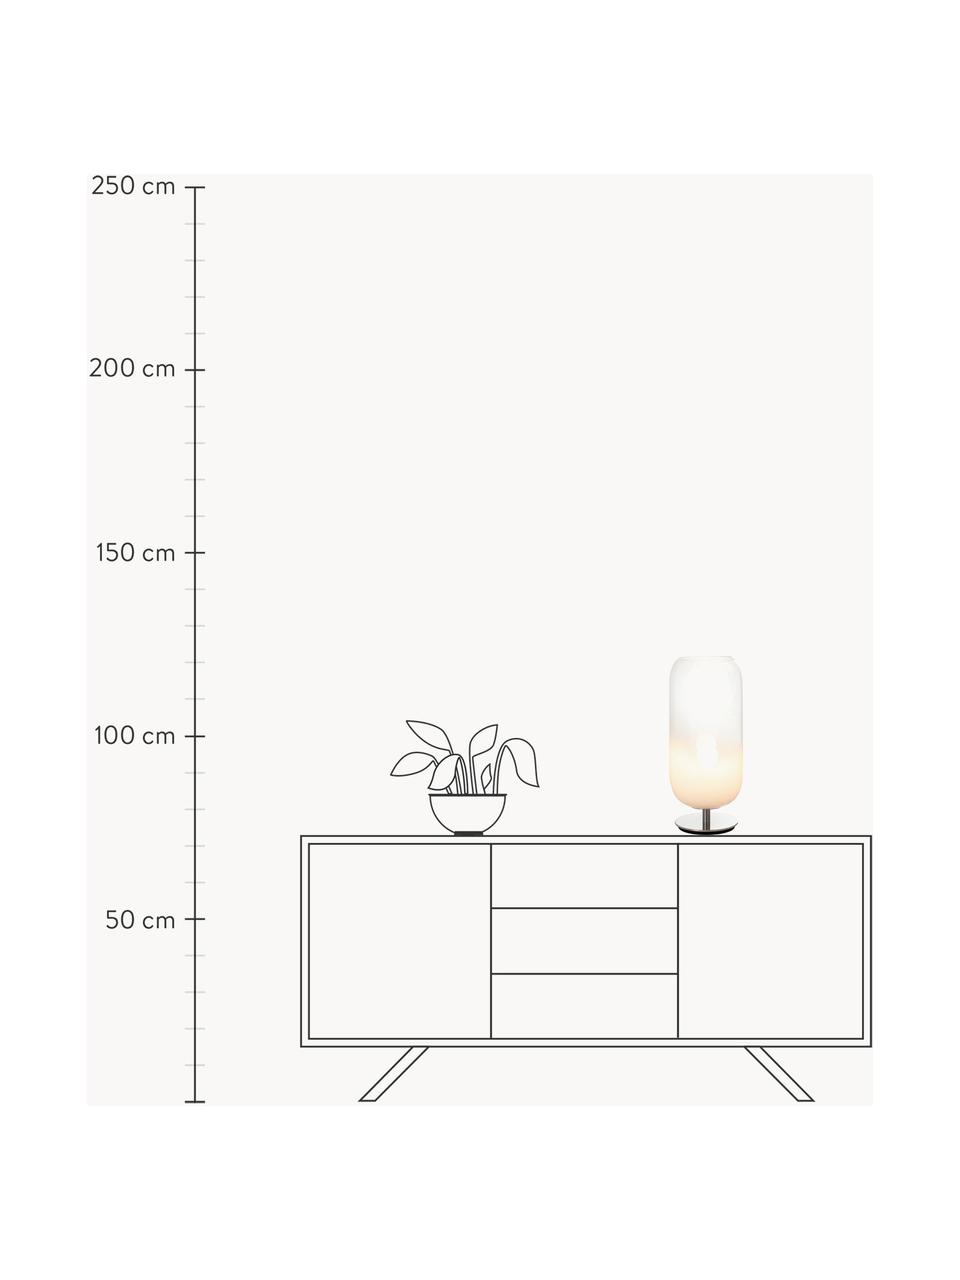 Mondgeblazen tafellamp Gople, verschillende formaten, Lampenkap: mondgeblazen glas, Wit, zilverkleurig, Ø 21 x H 49 cm